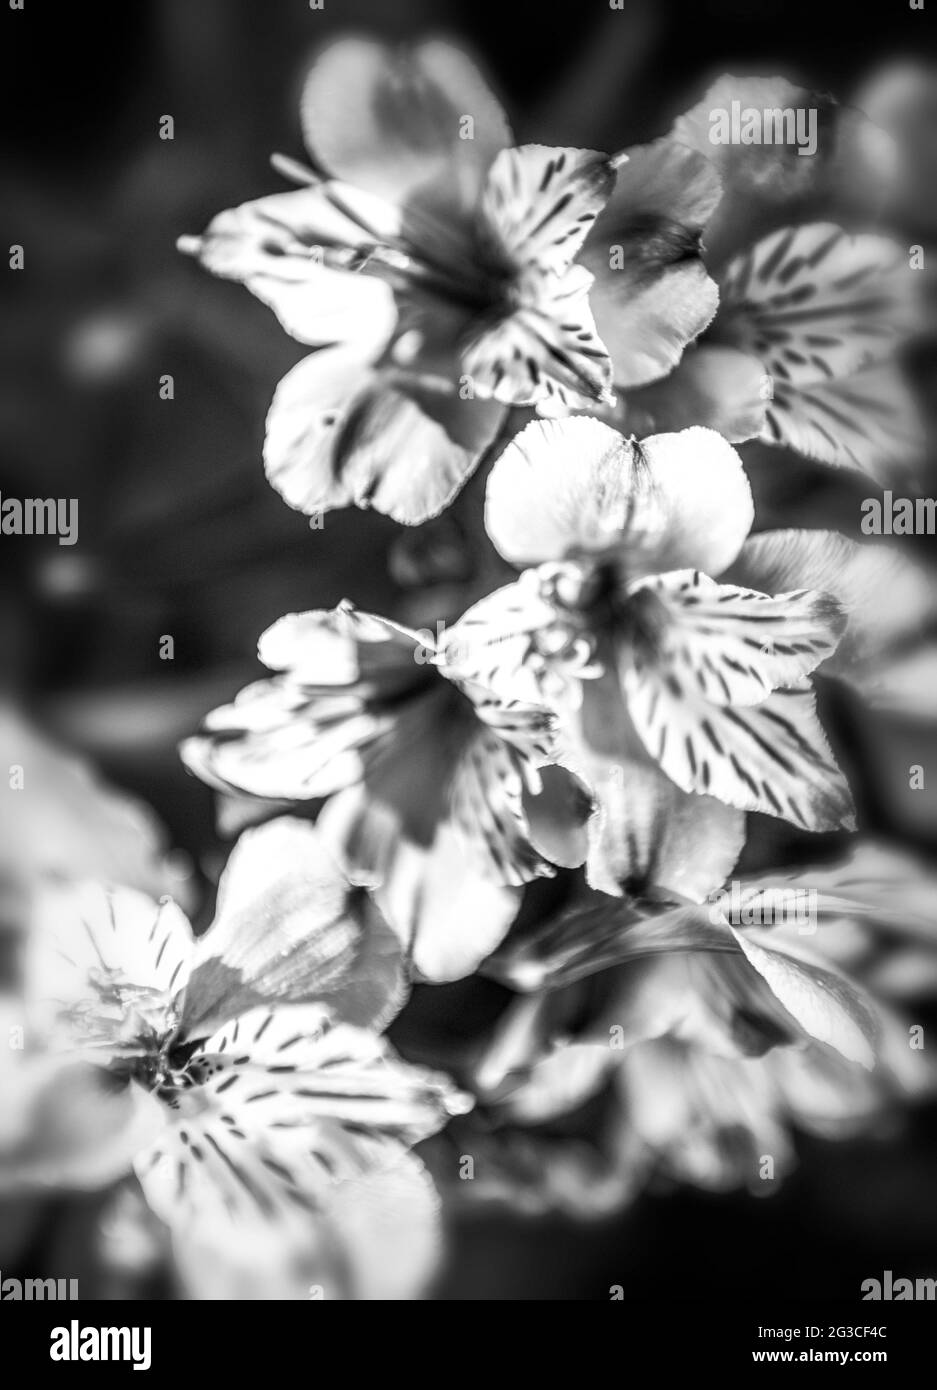 Flores digitalizadas que enfatizan el estado de ánimo sobre el realismo. Foto de stock